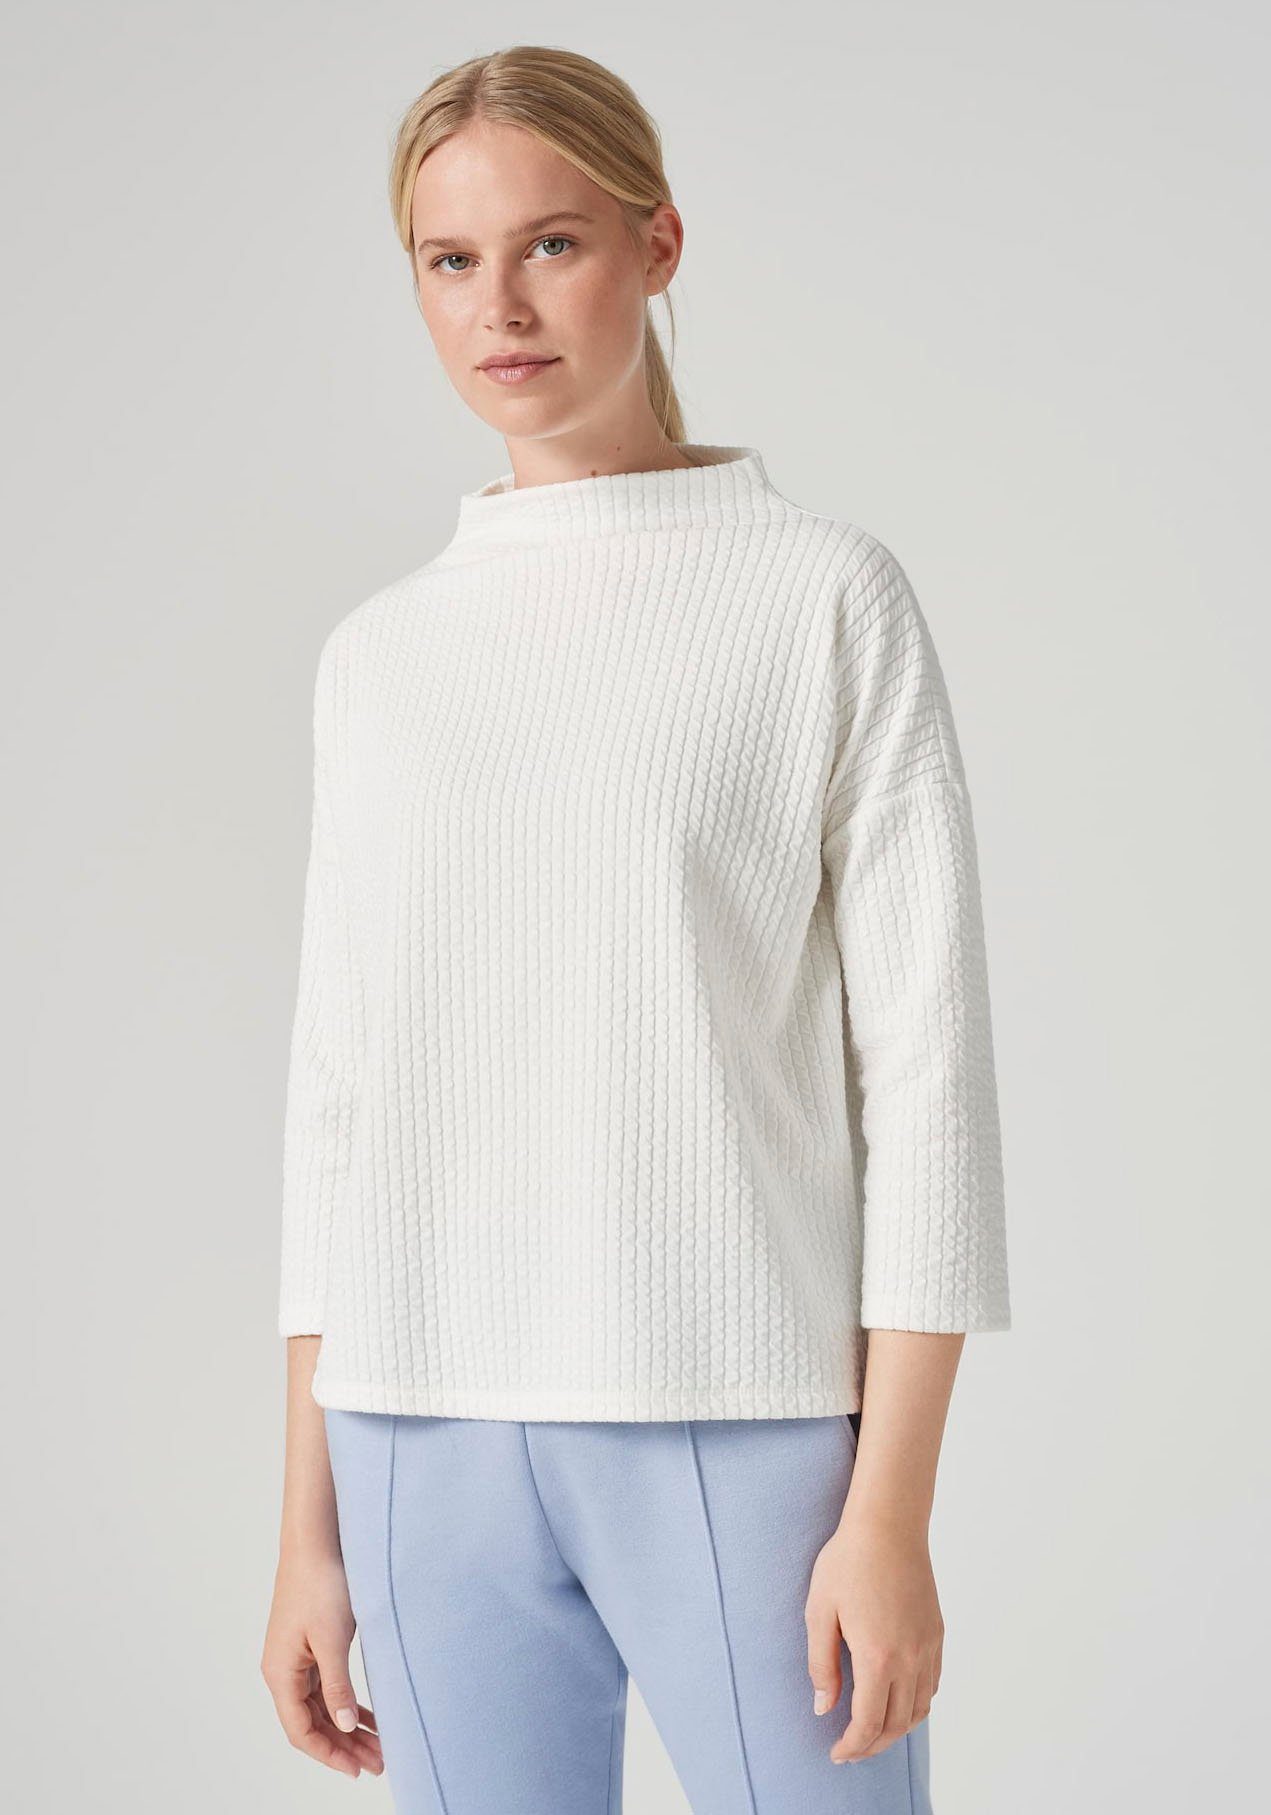 someday Pullover online kaufen | OTTO